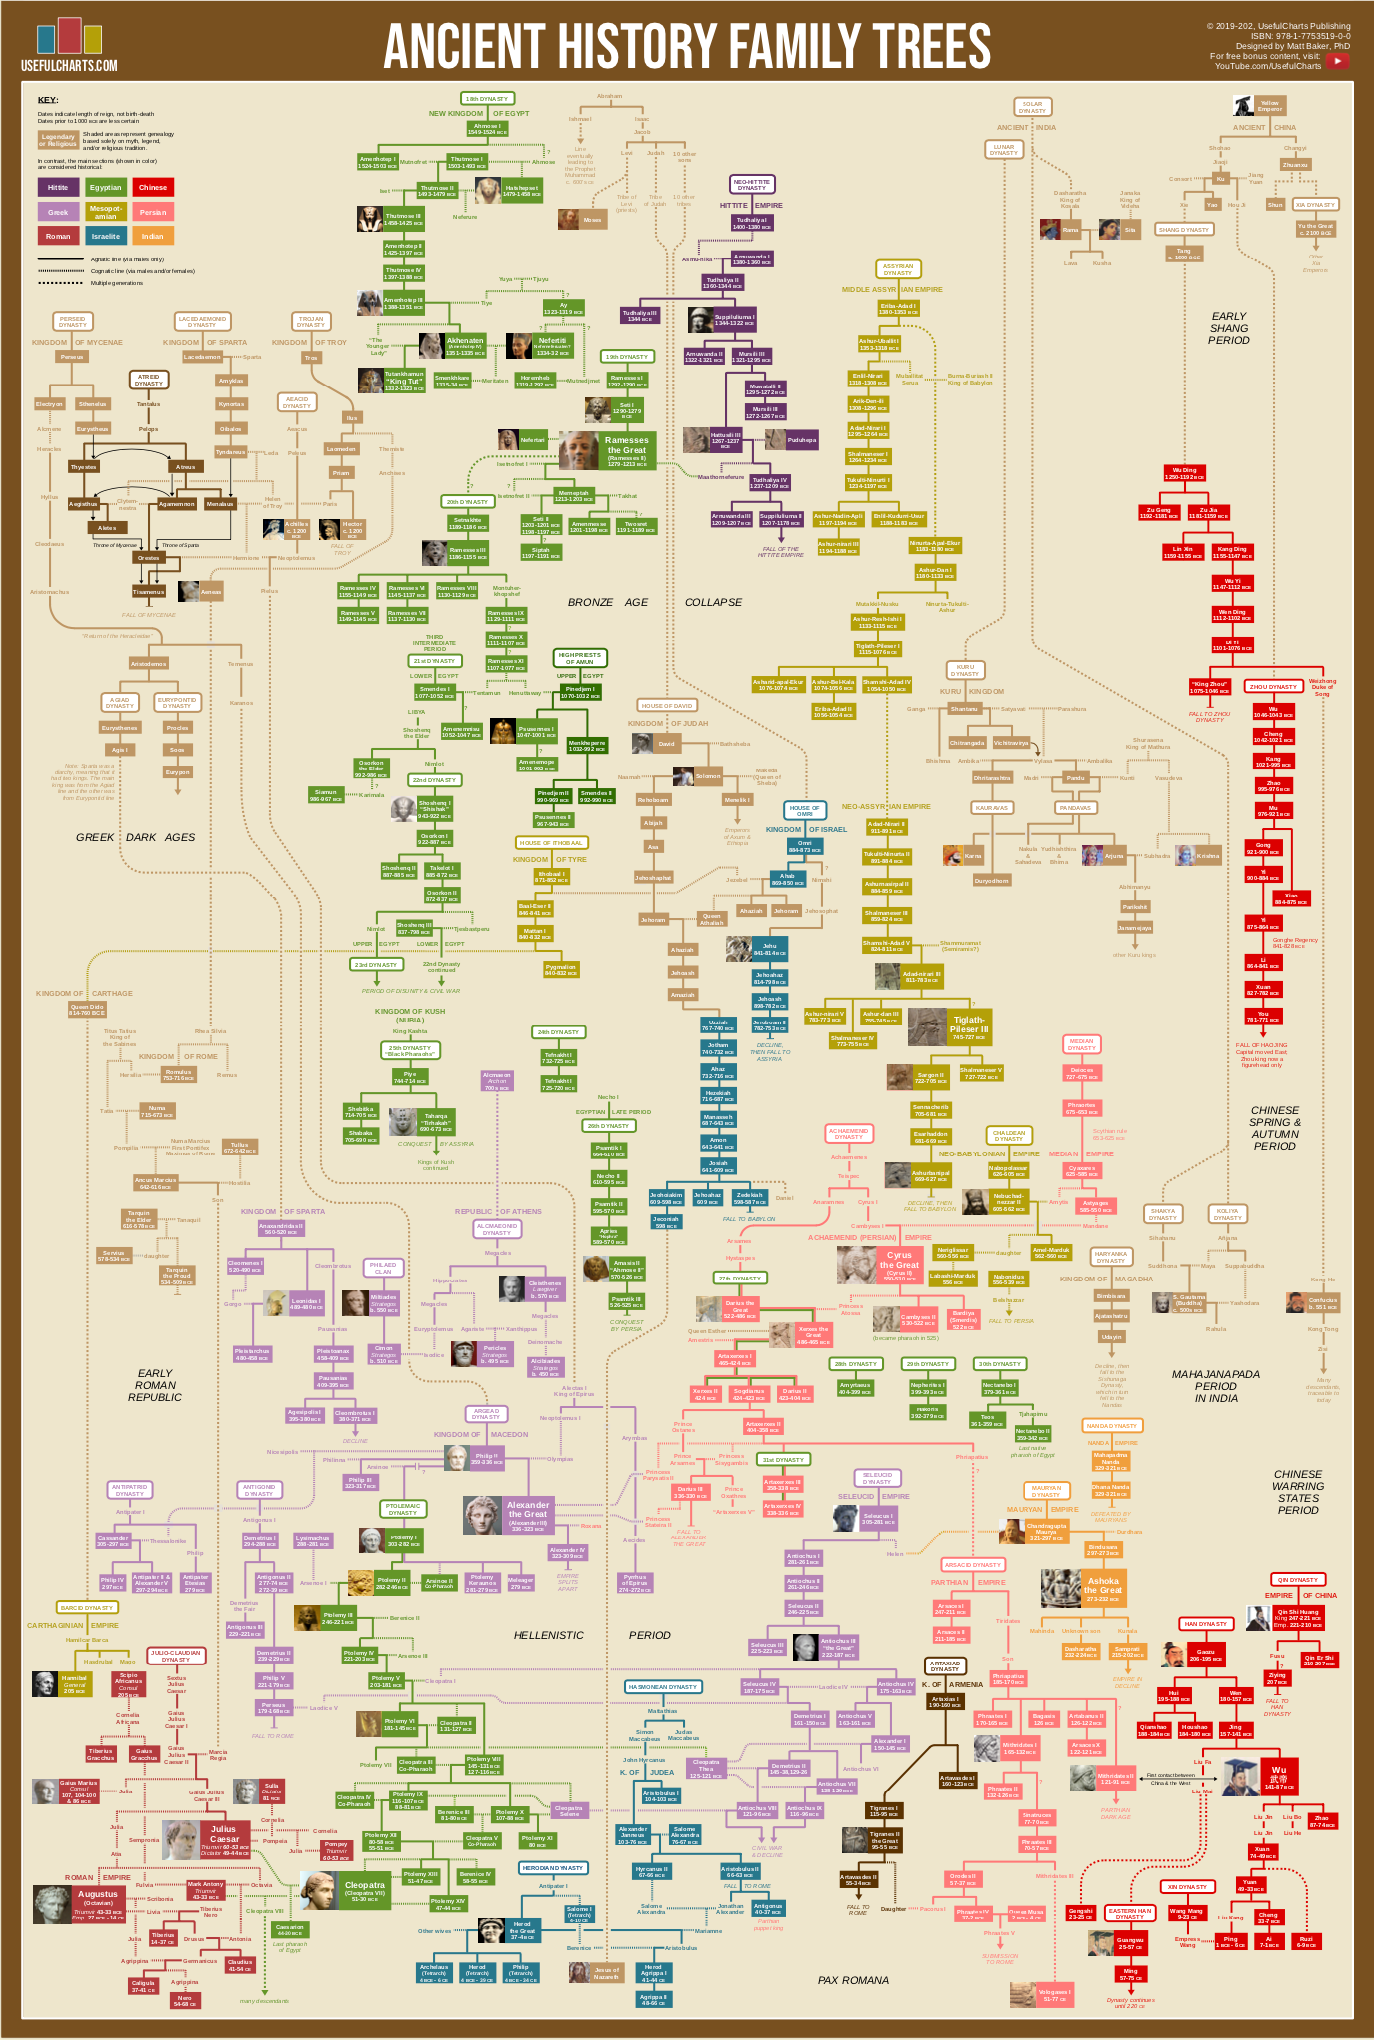 A family tree - World History Volume